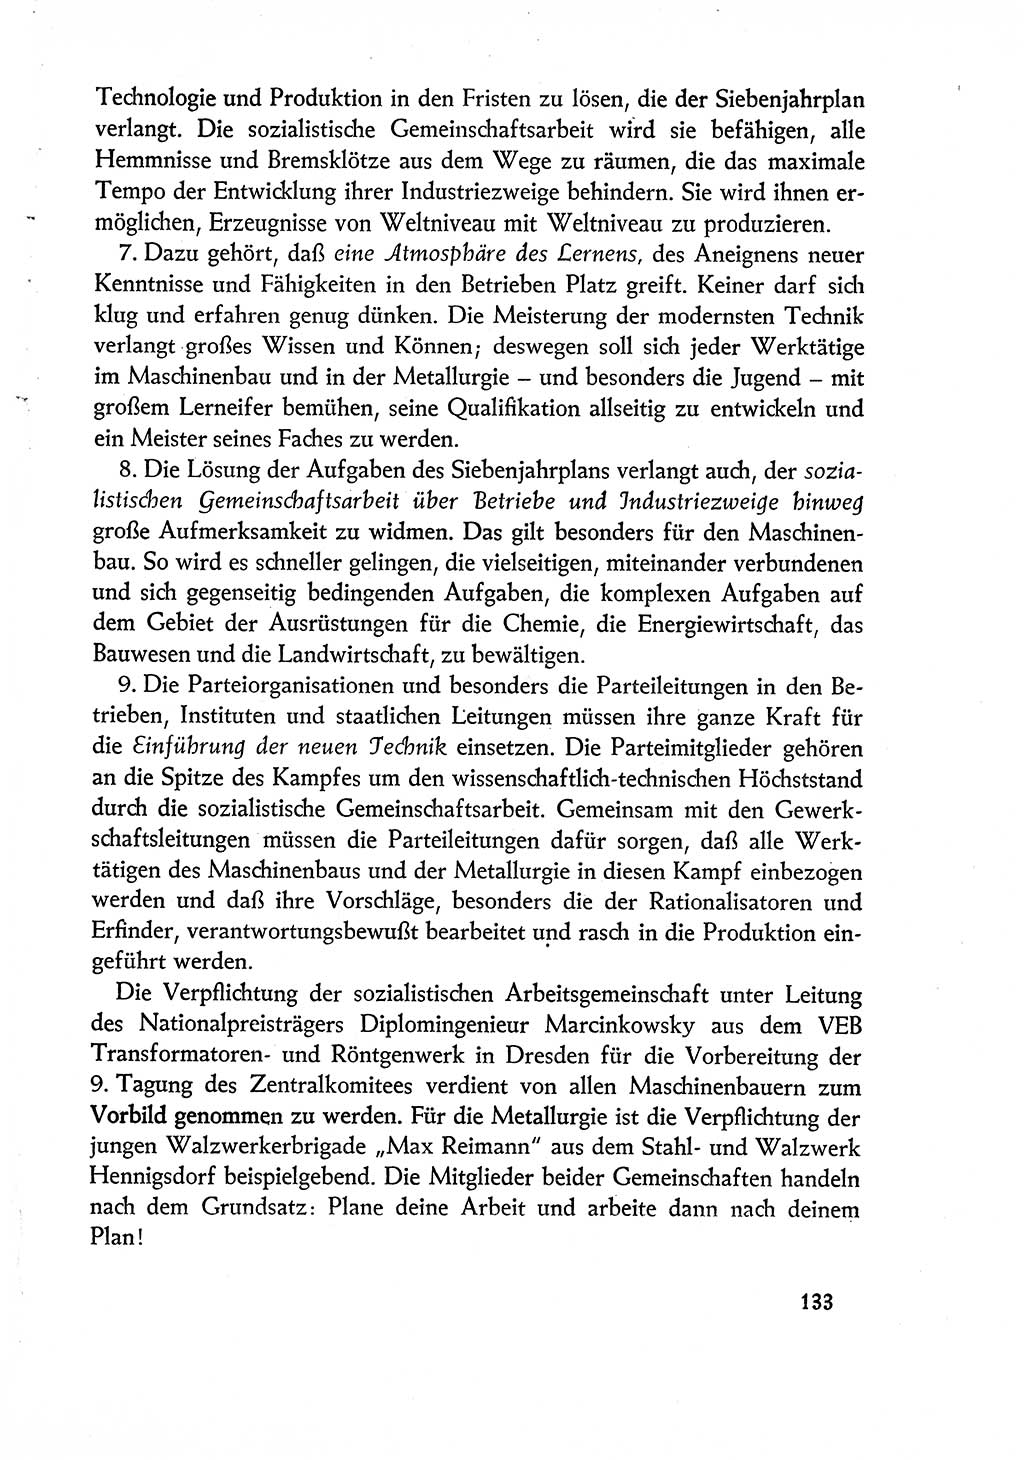 Dokumente der Sozialistischen Einheitspartei Deutschlands (SED) [Deutsche Demokratische Republik (DDR)] 1960-1961, Seite 133 (Dok. SED DDR 1960-1961, S. 133)